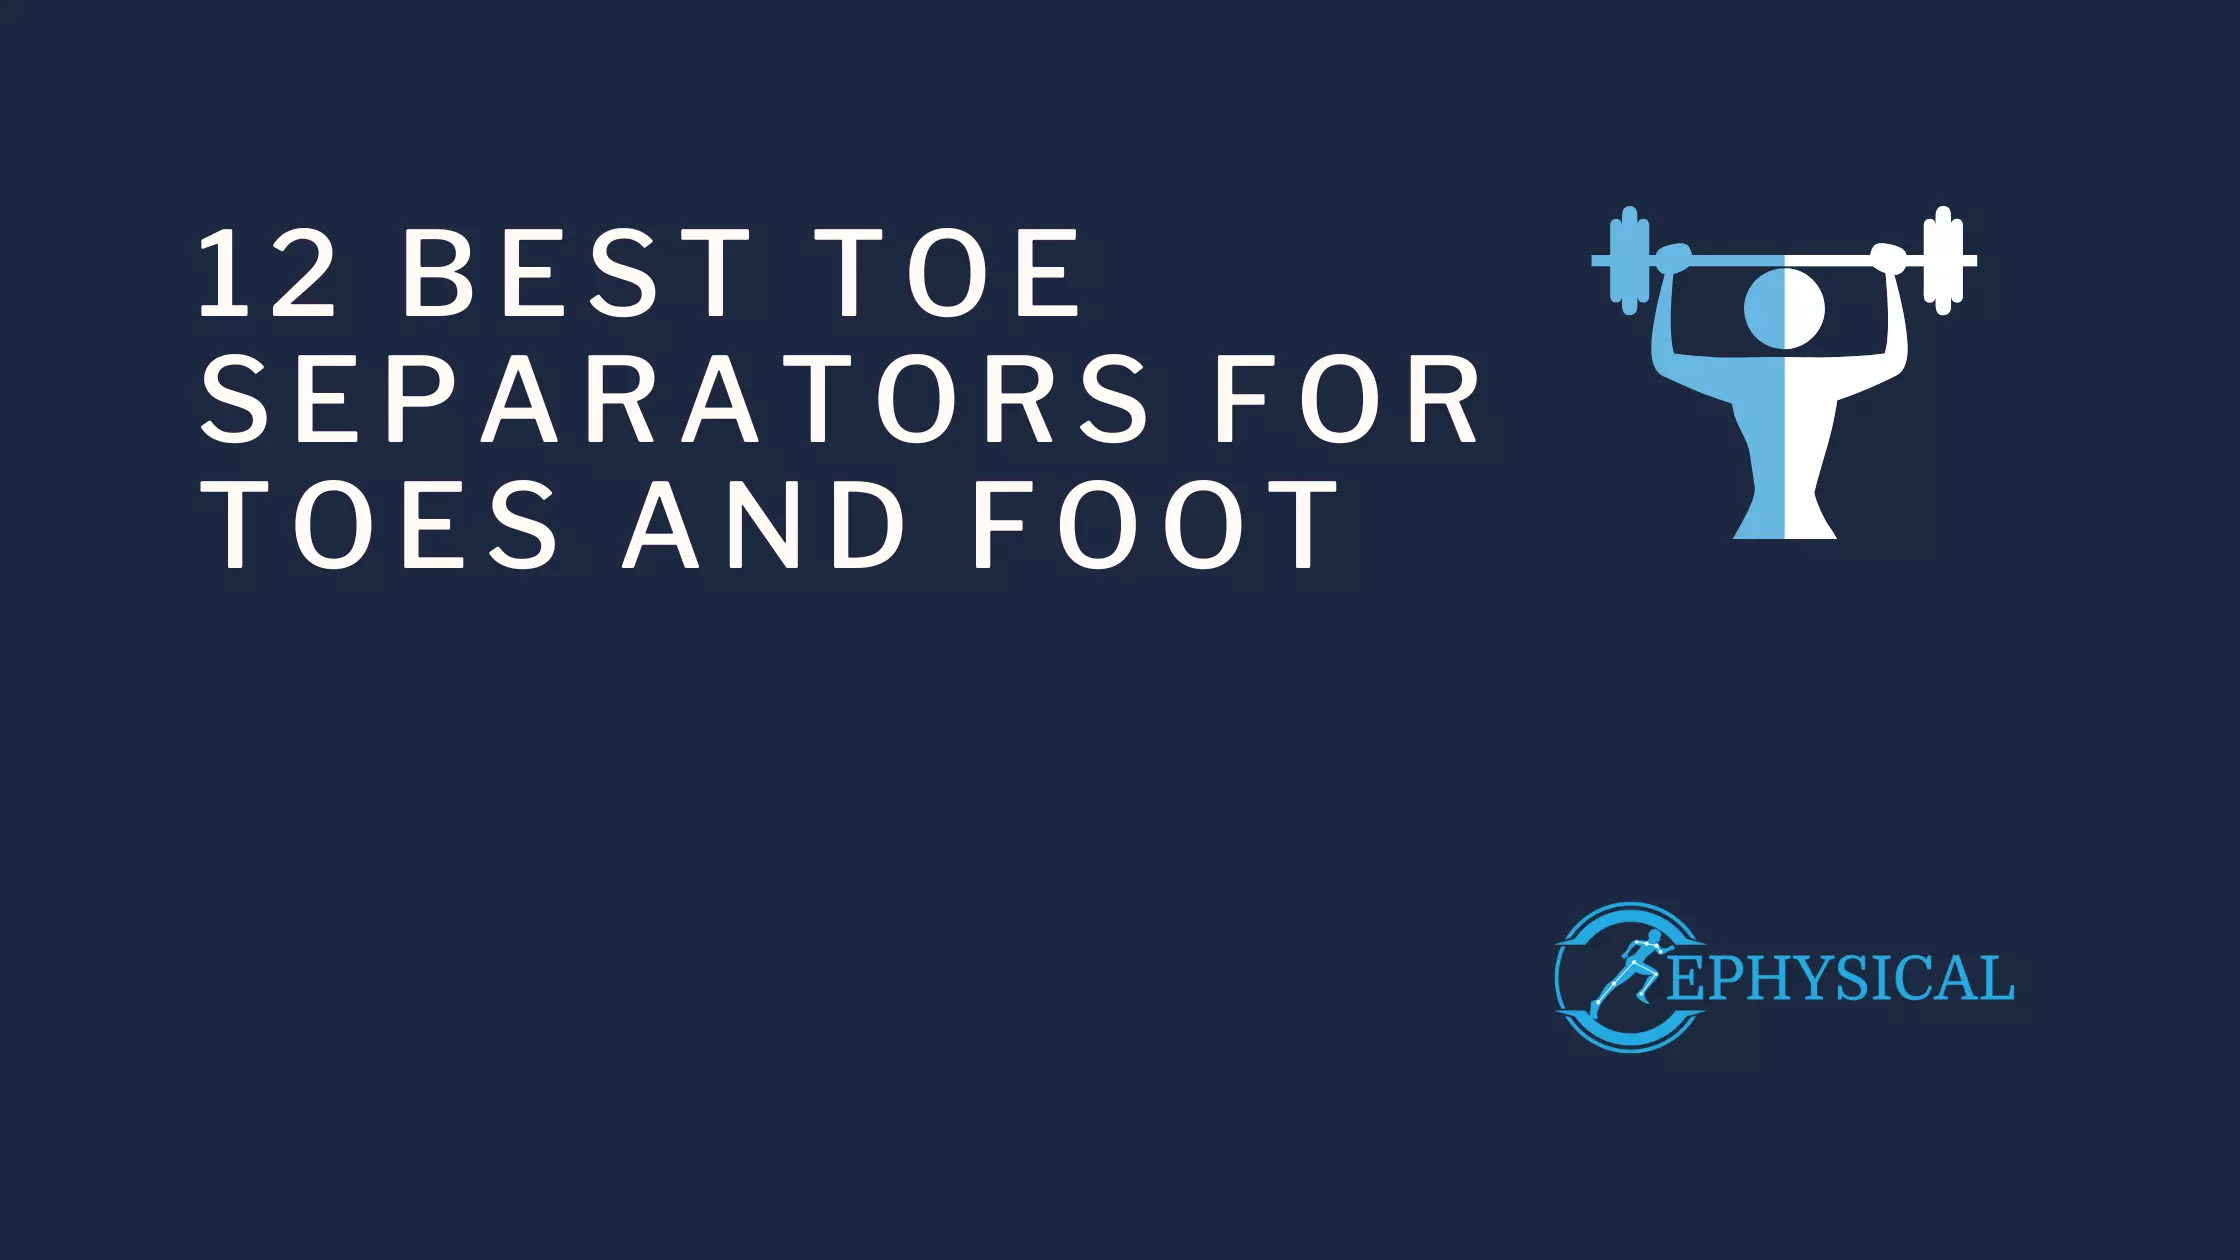 12 best toe separators